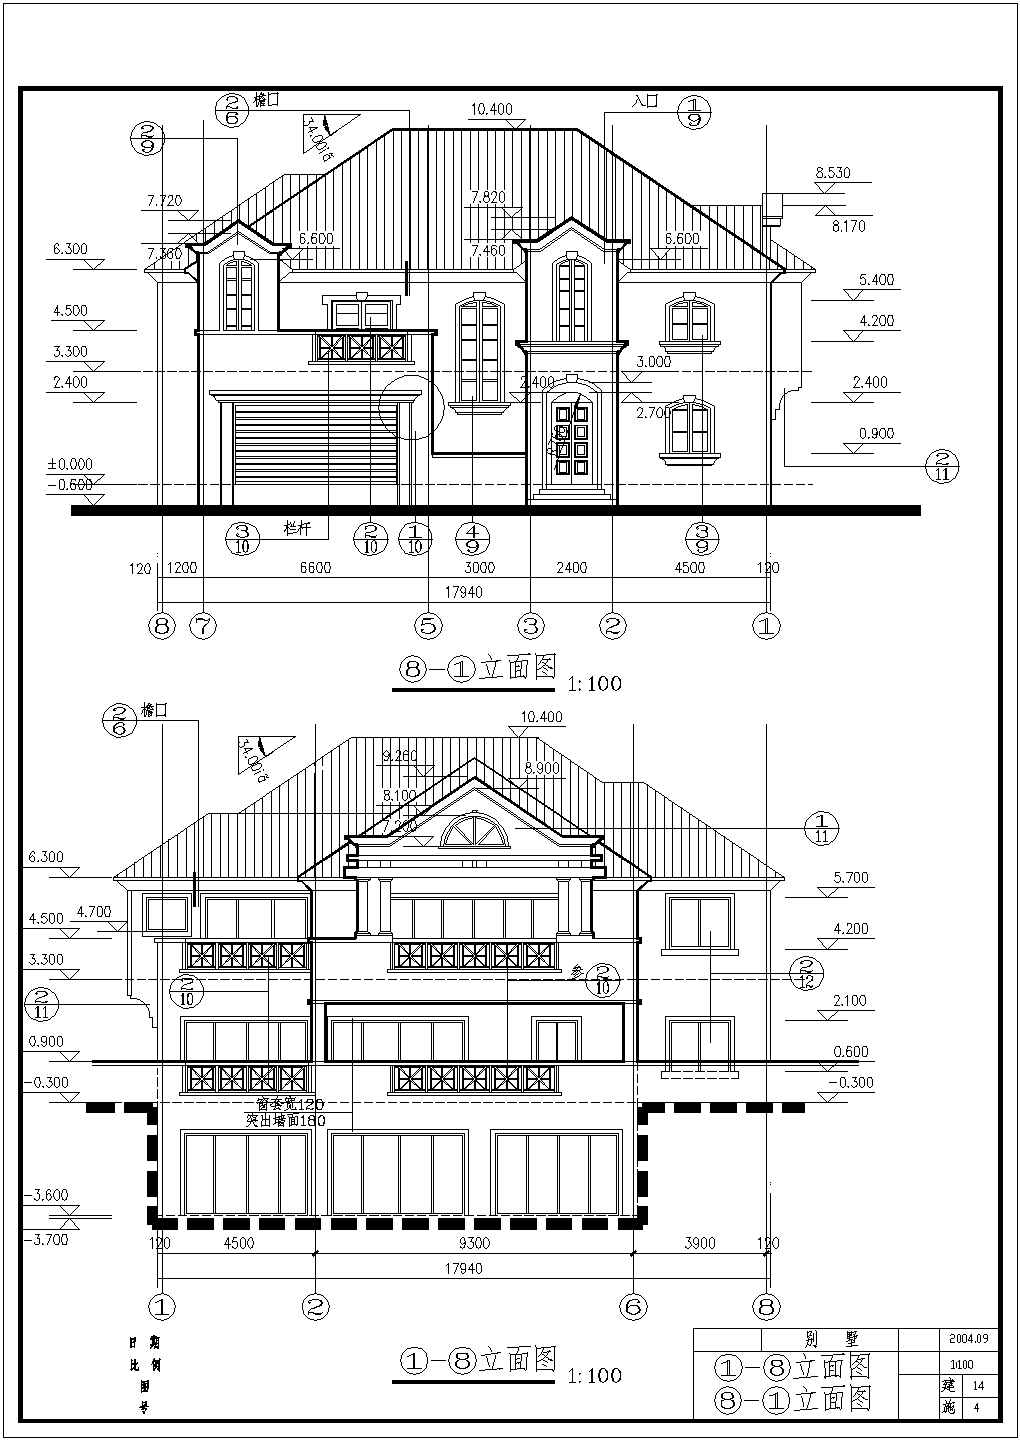 舒适混合结构二层自建房屋详细建筑设计图